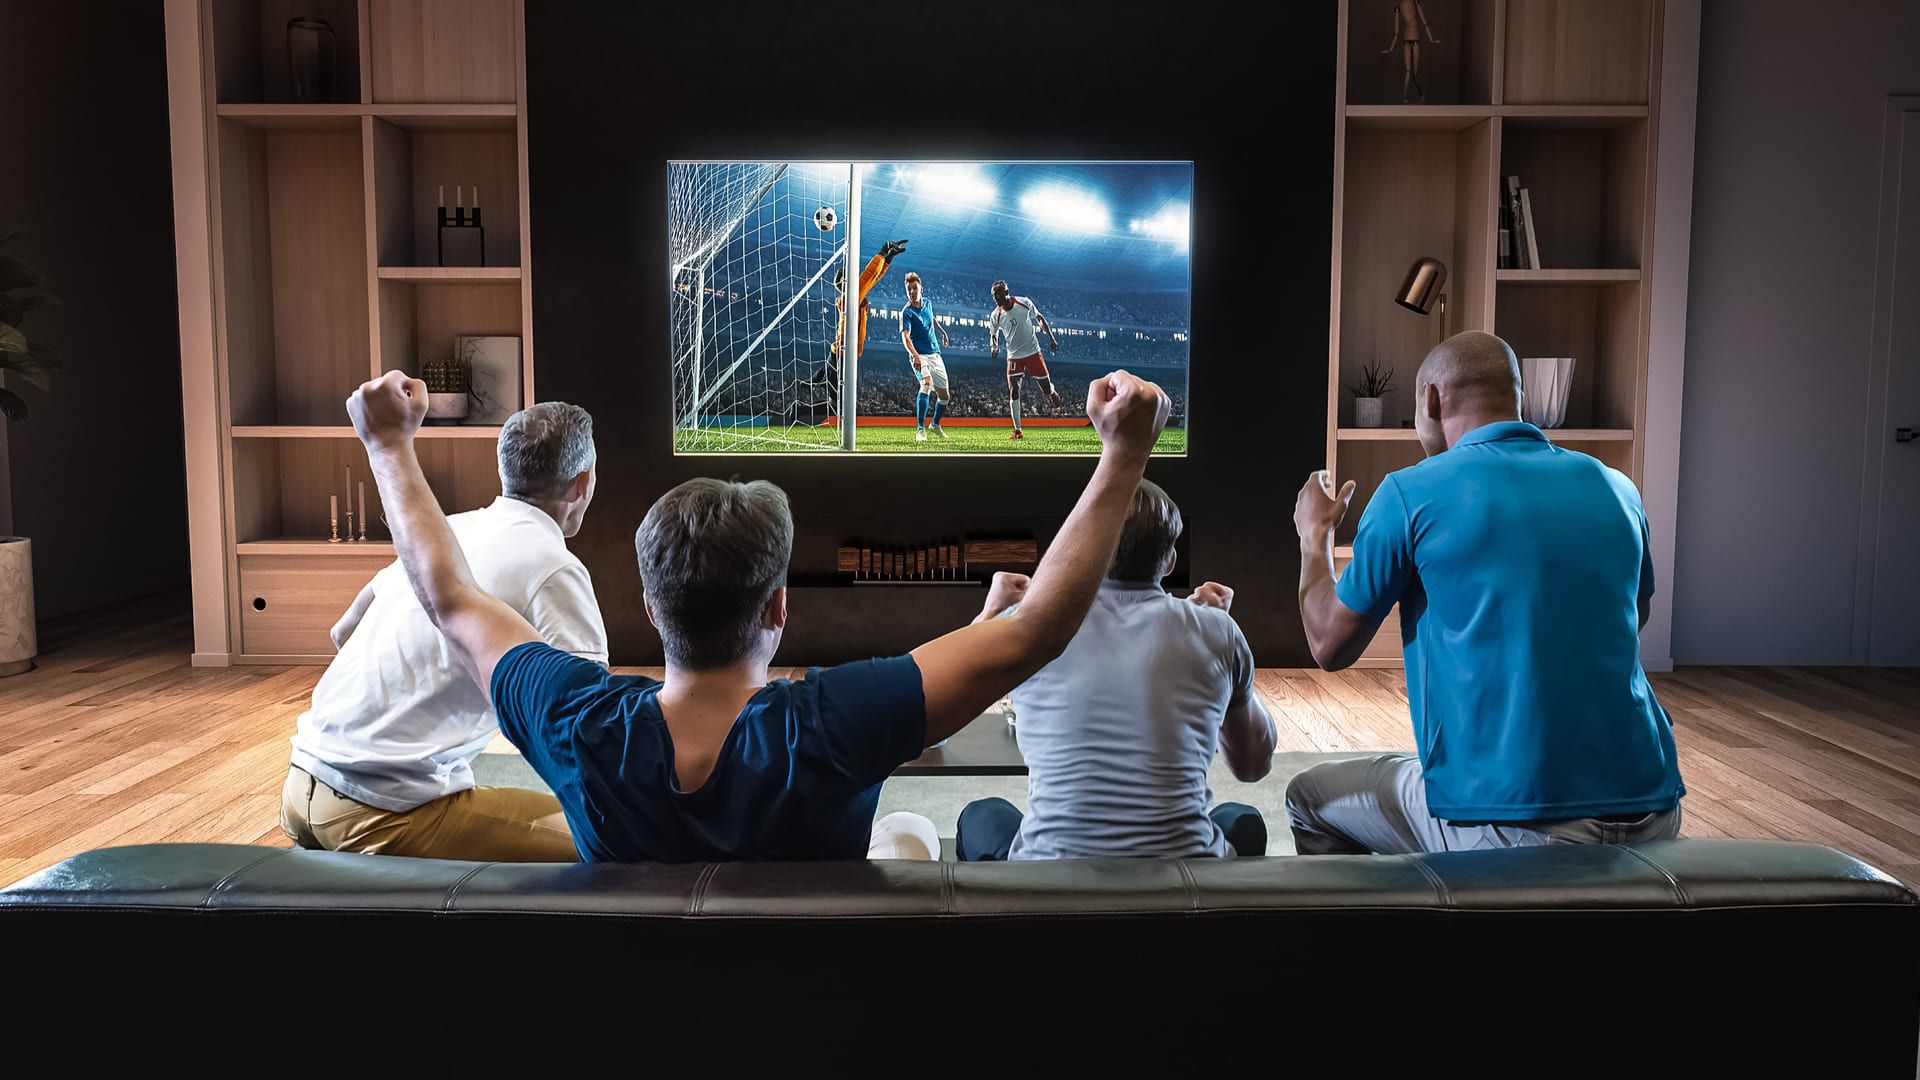 Melhor TV para Assistir Futebol e Custo Benefício